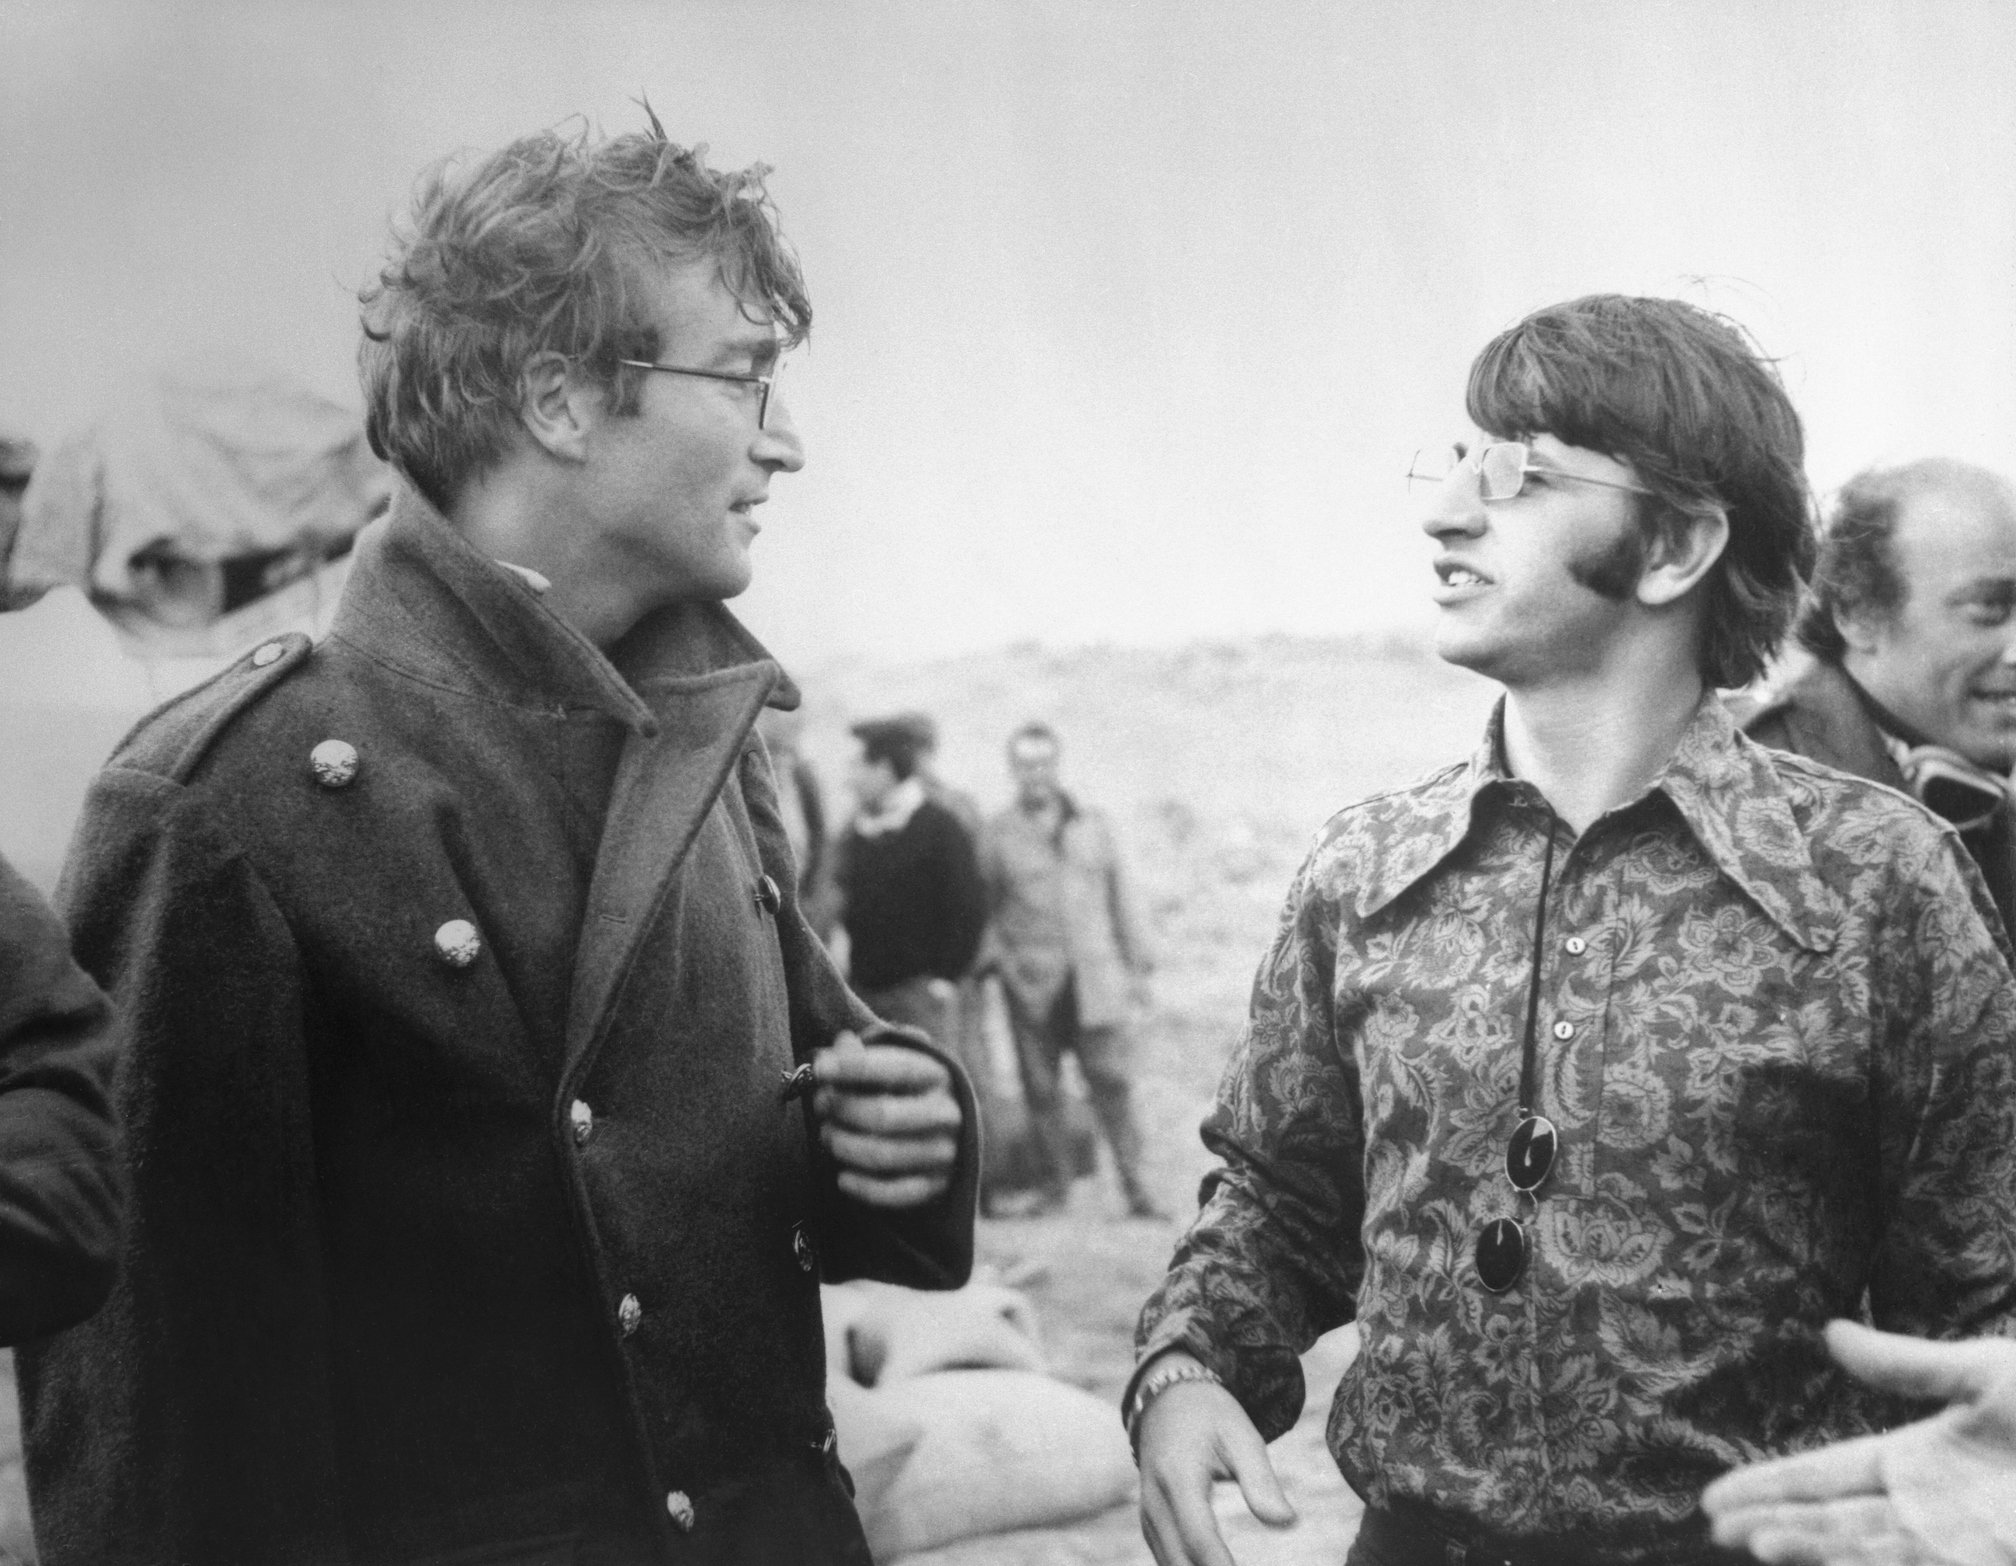 John Lennon suýt được đóng vai chính trong bộ phim kinh điển năm 1980 này